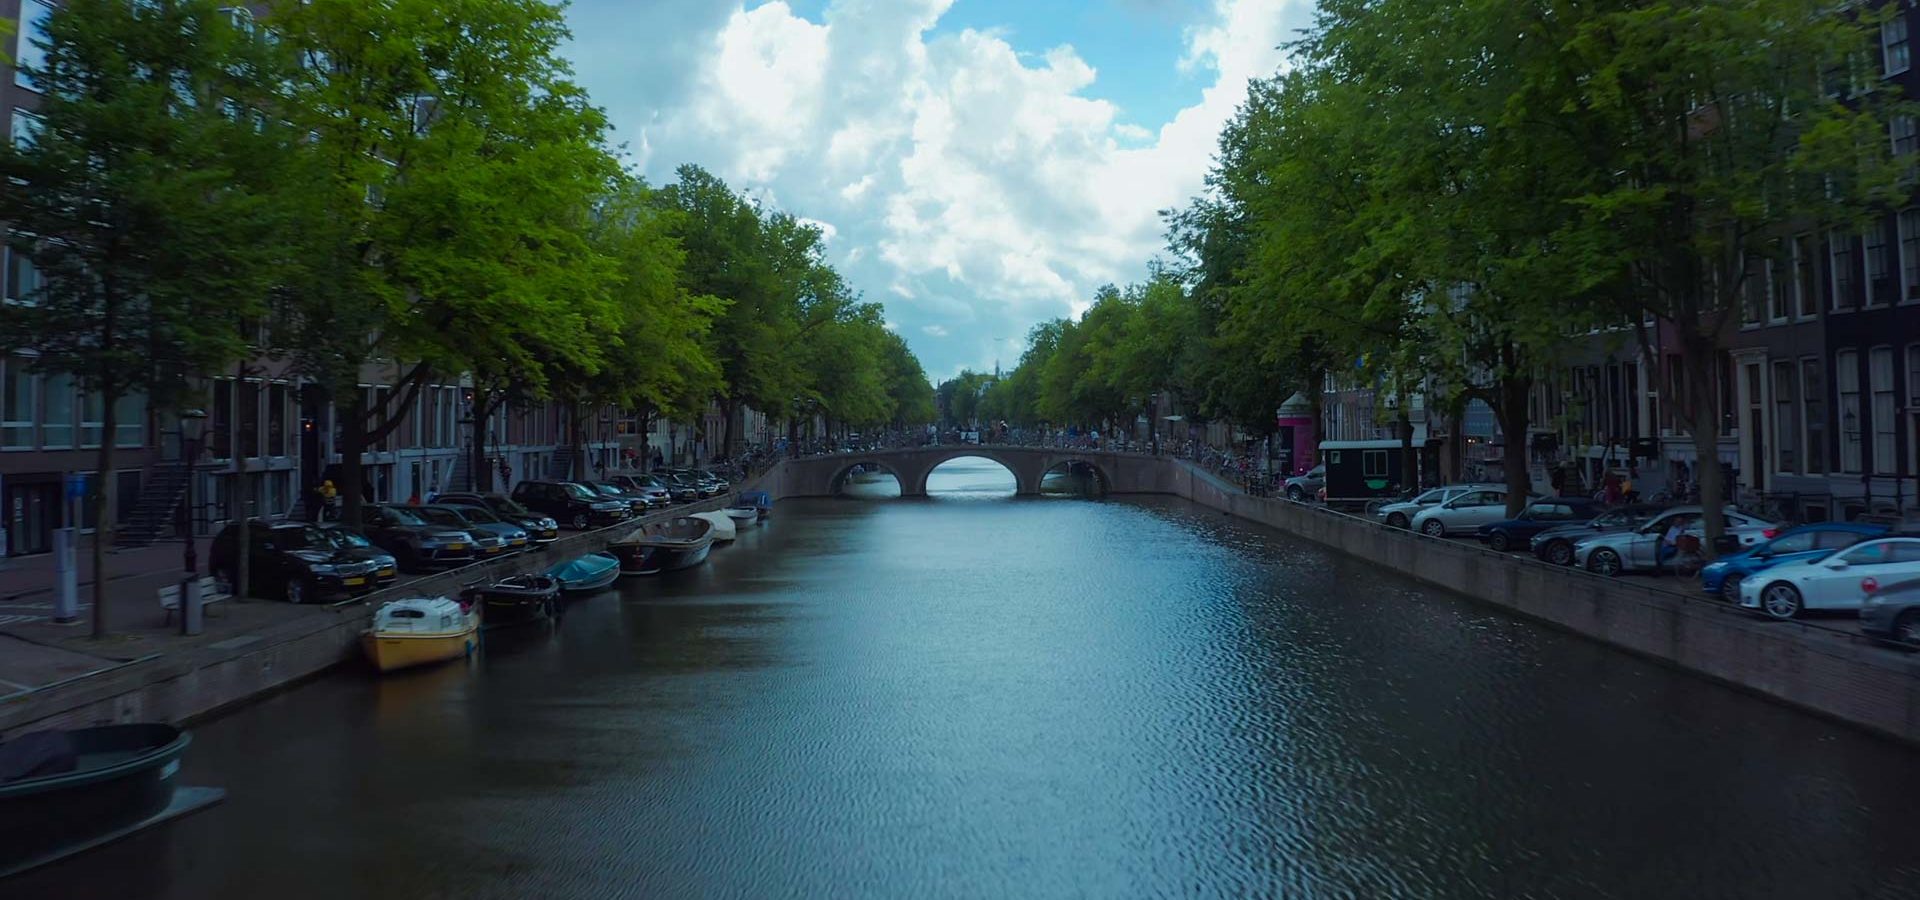 Melhores locais para visitar em Amesterdão, Holanda